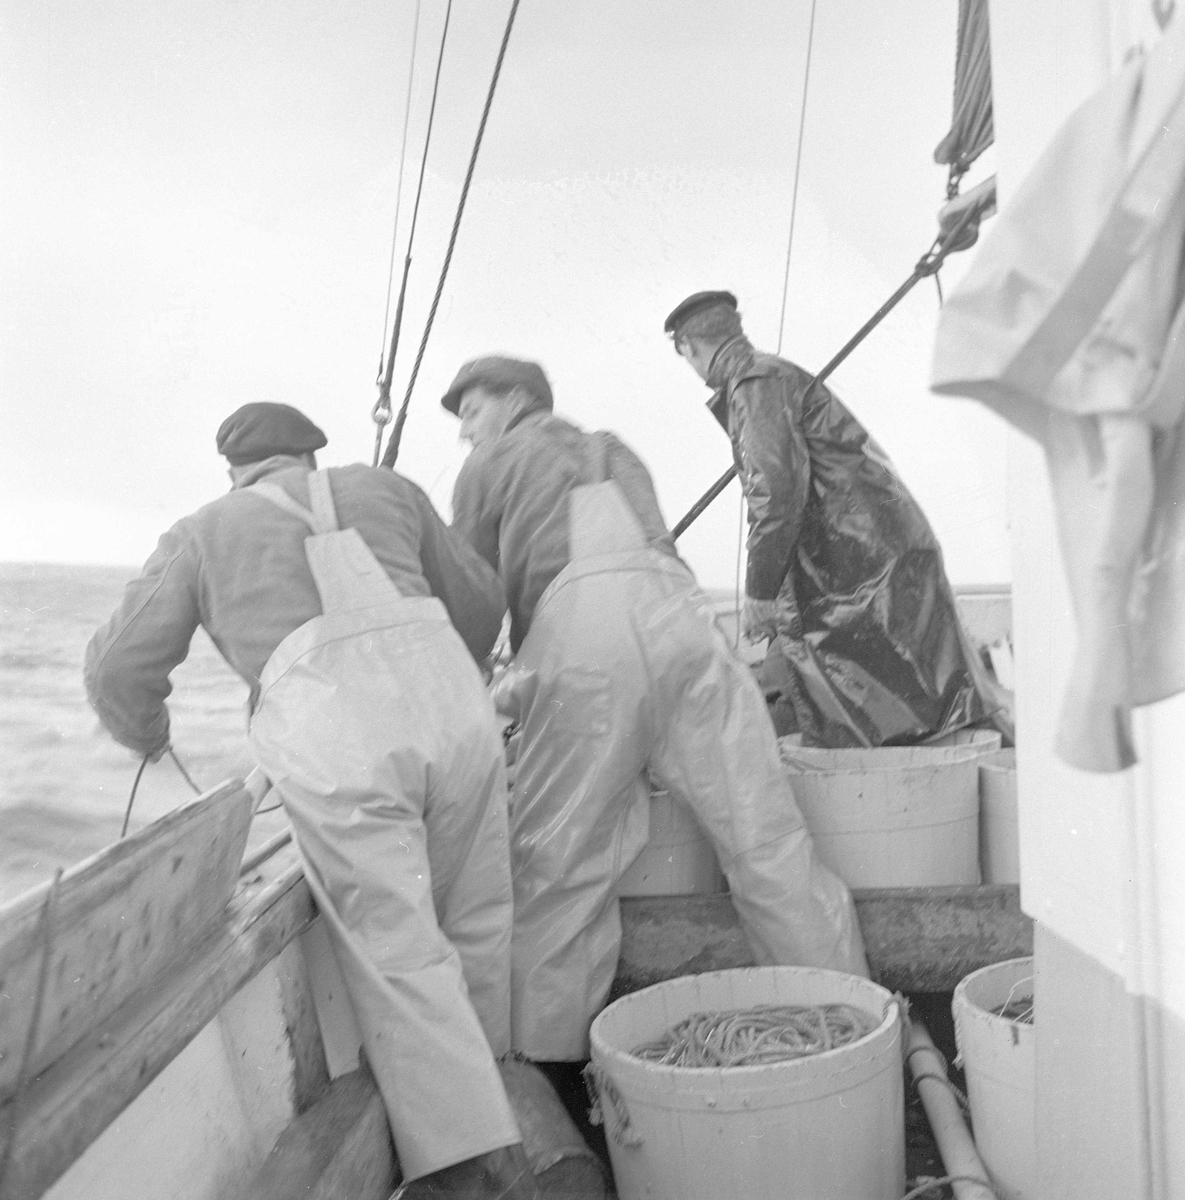 Pigghåfiske på Shetland.
Shetland, 14-22. mai 1958,tre menn i arbeid på dekk.